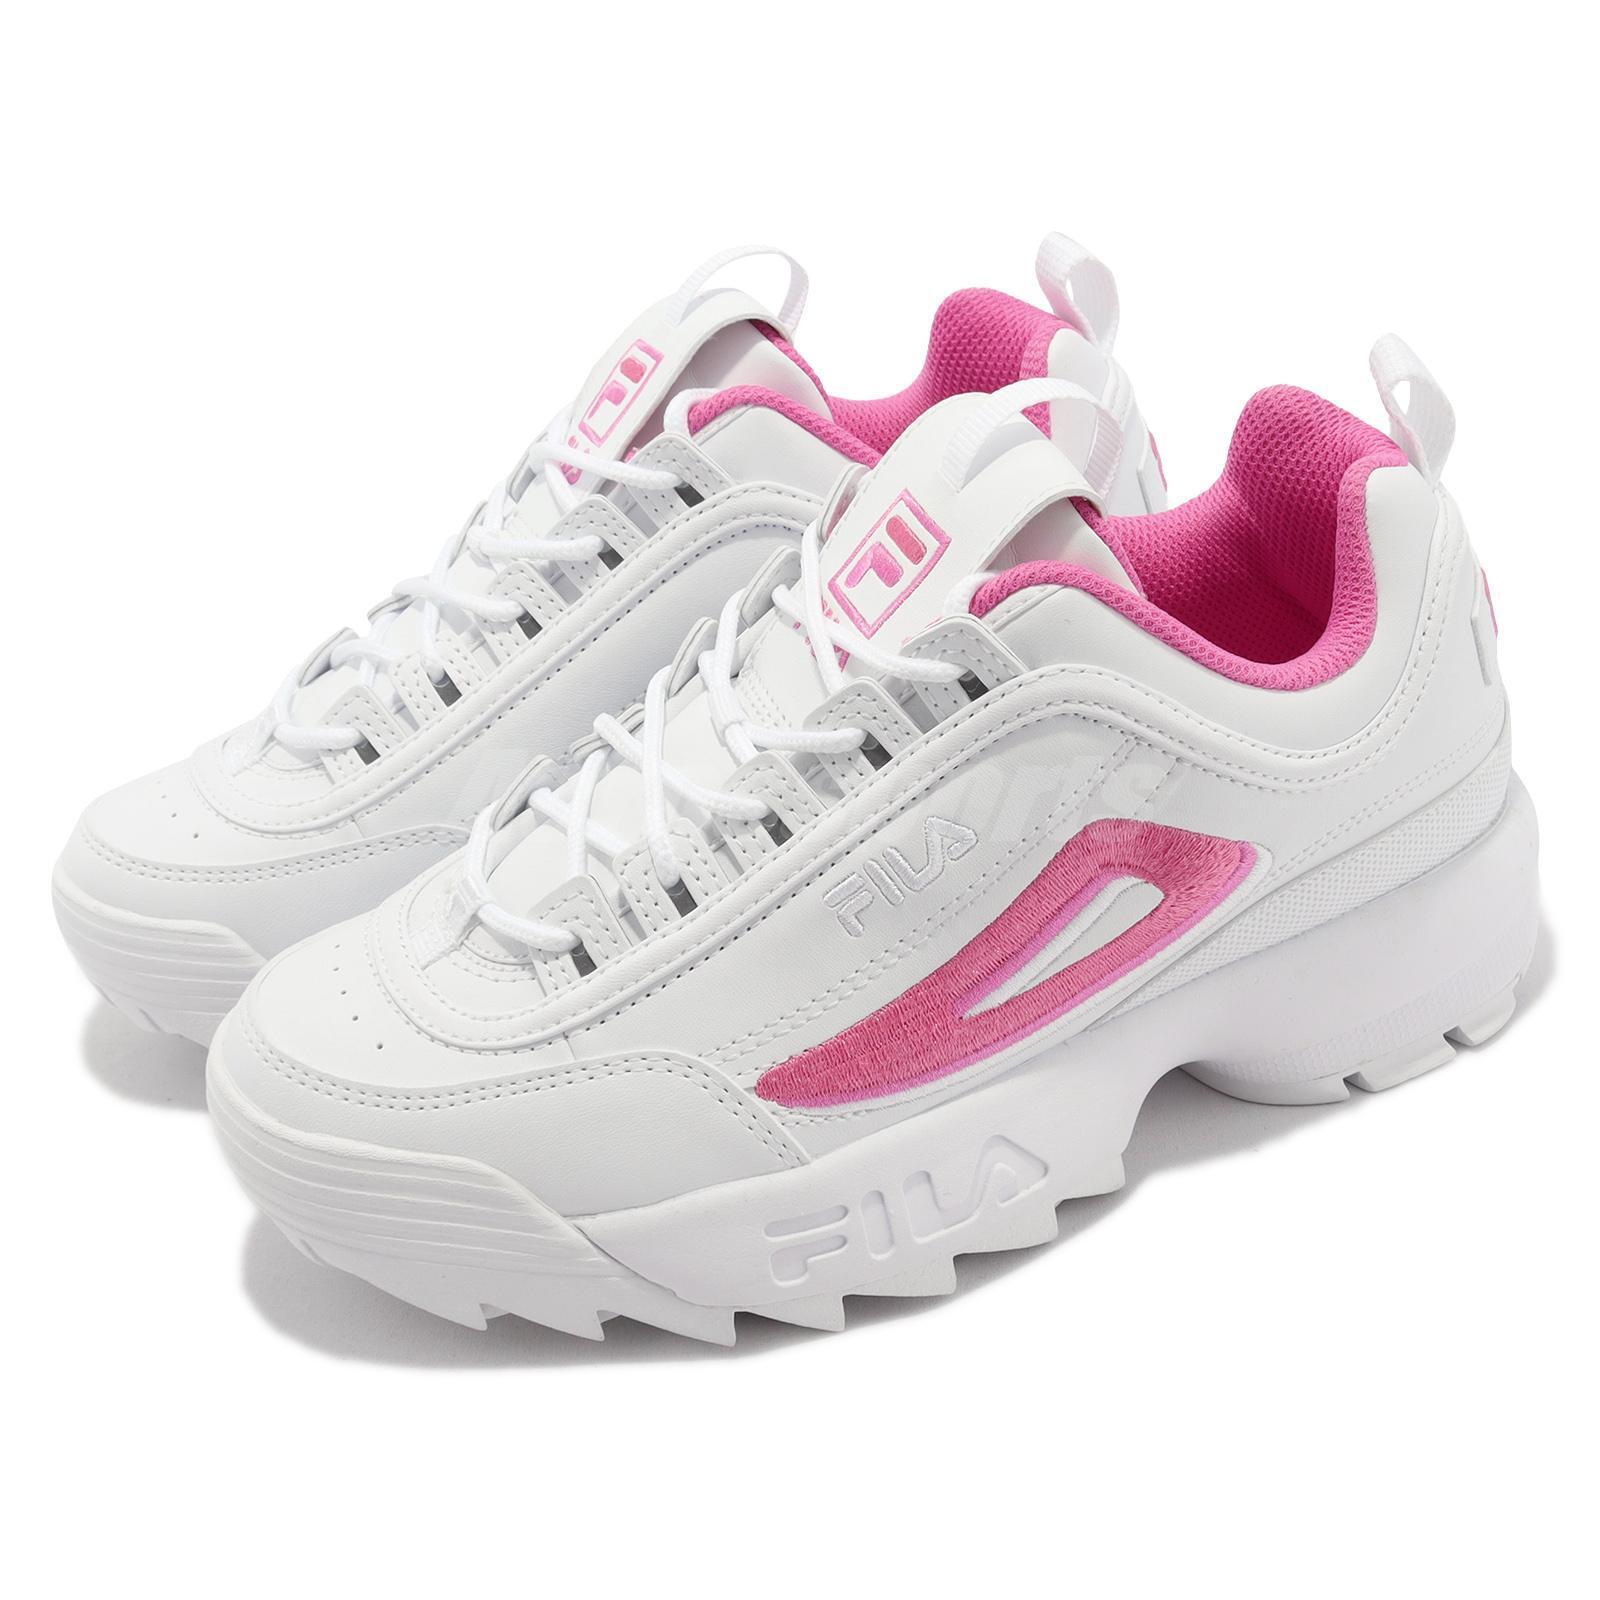 Afdeling hver slack Fila Disruptor 2 White Pink Men Unisex Casual Lifestyle Platform Chunky Dad  Shoe | eBay